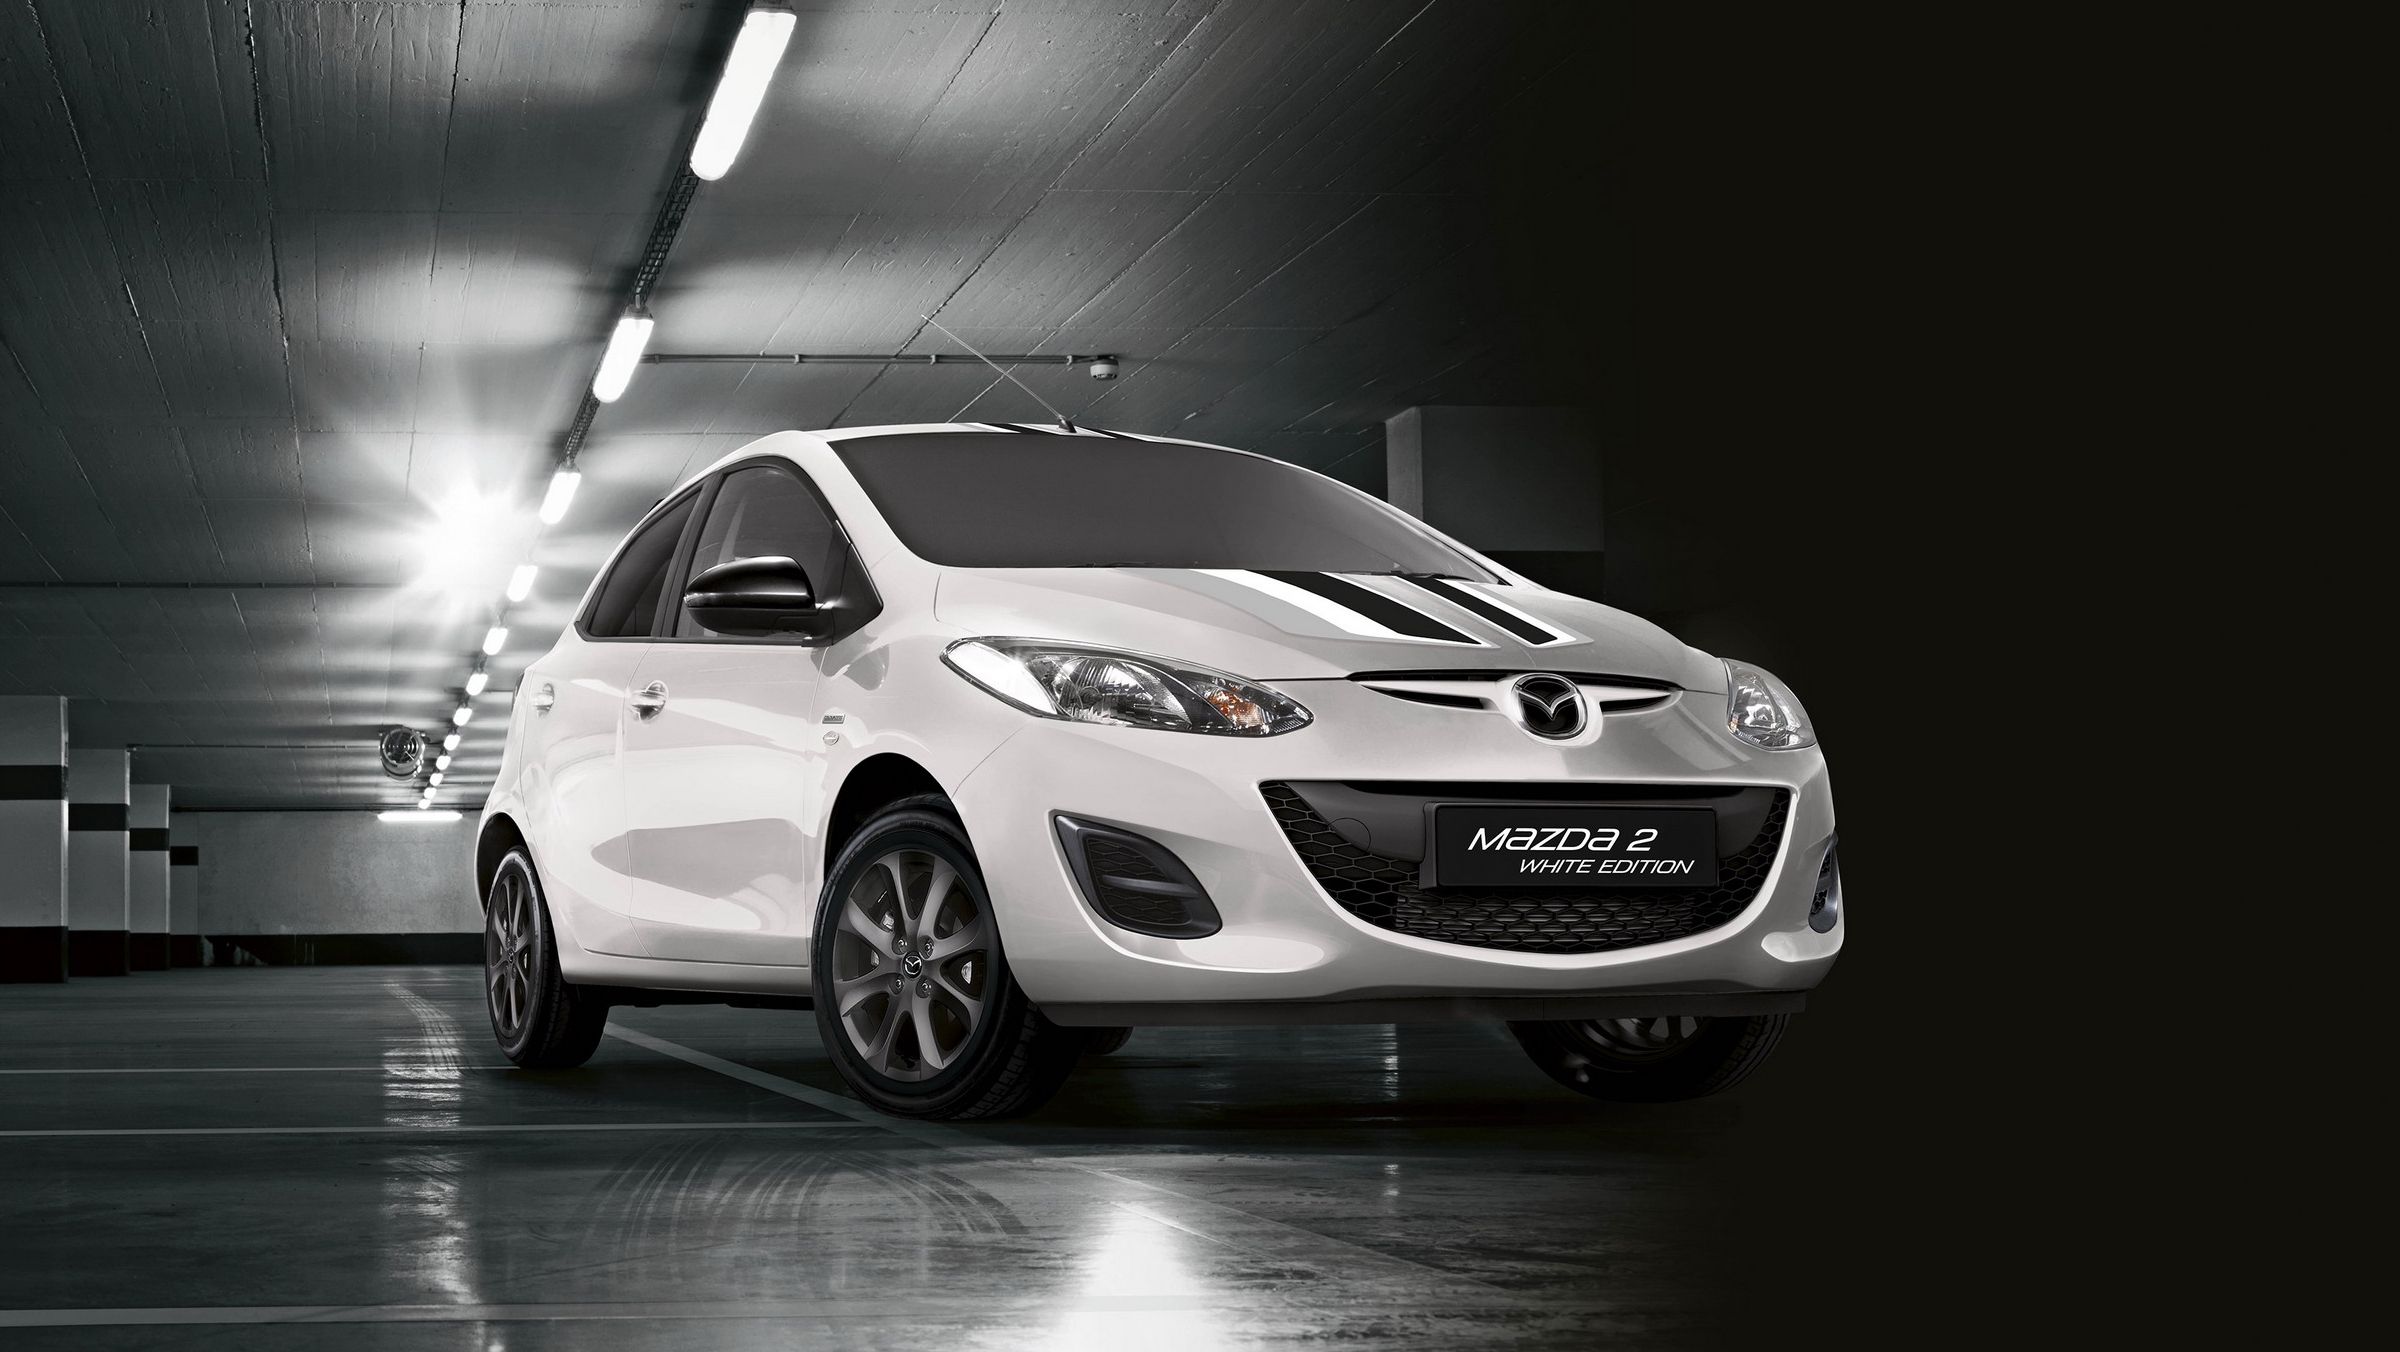 Mazda2 Black And White Edition Picture, Photo, Wallpaper